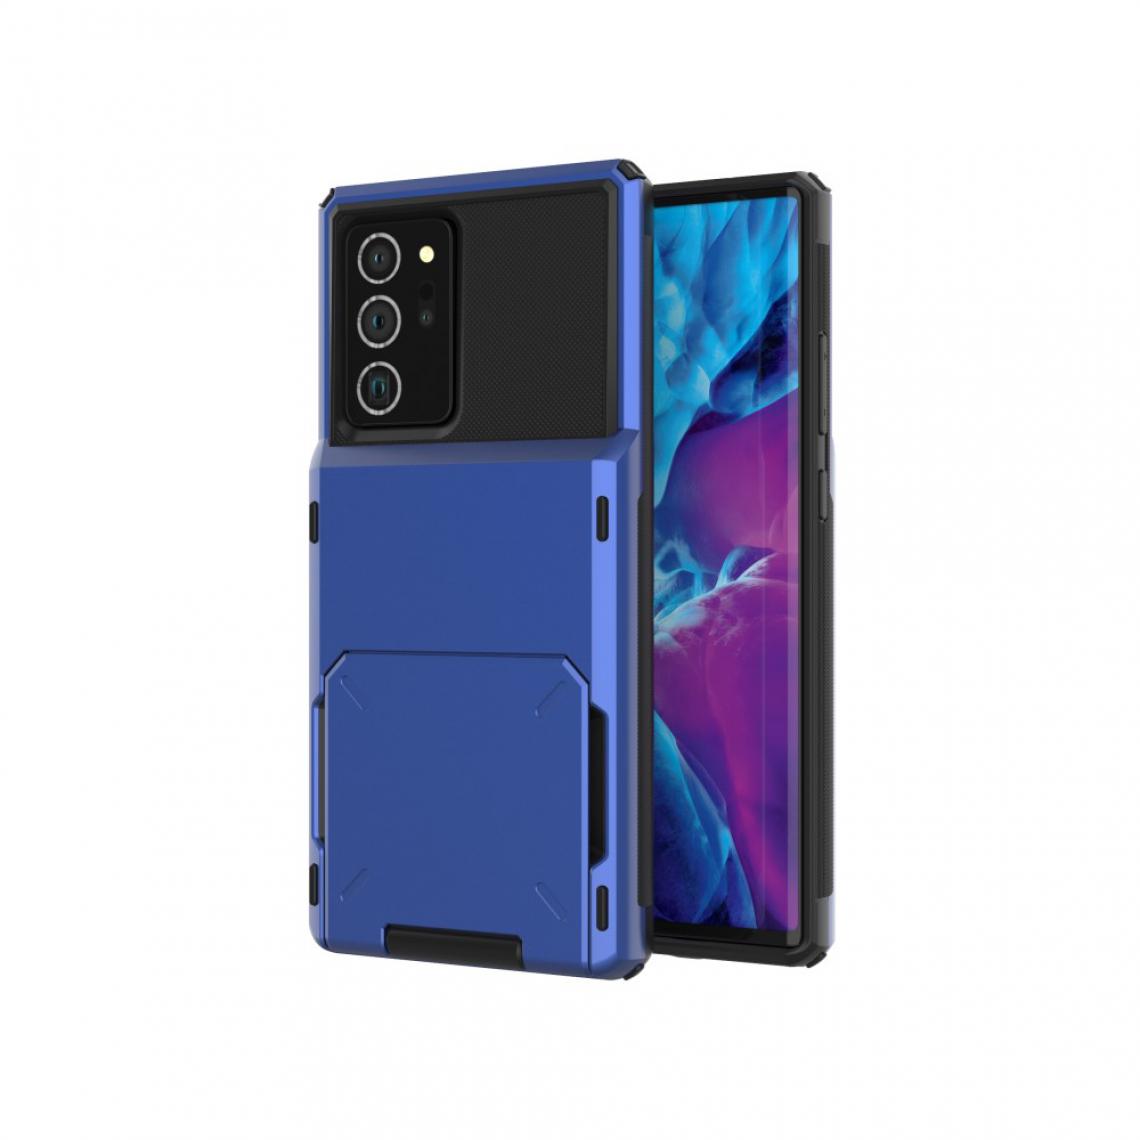 Other - Coque en TPU flip hybride avec porte-carte bleu pour votre Samsung Galaxy Note 20/Note 20 5G - Coque, étui smartphone